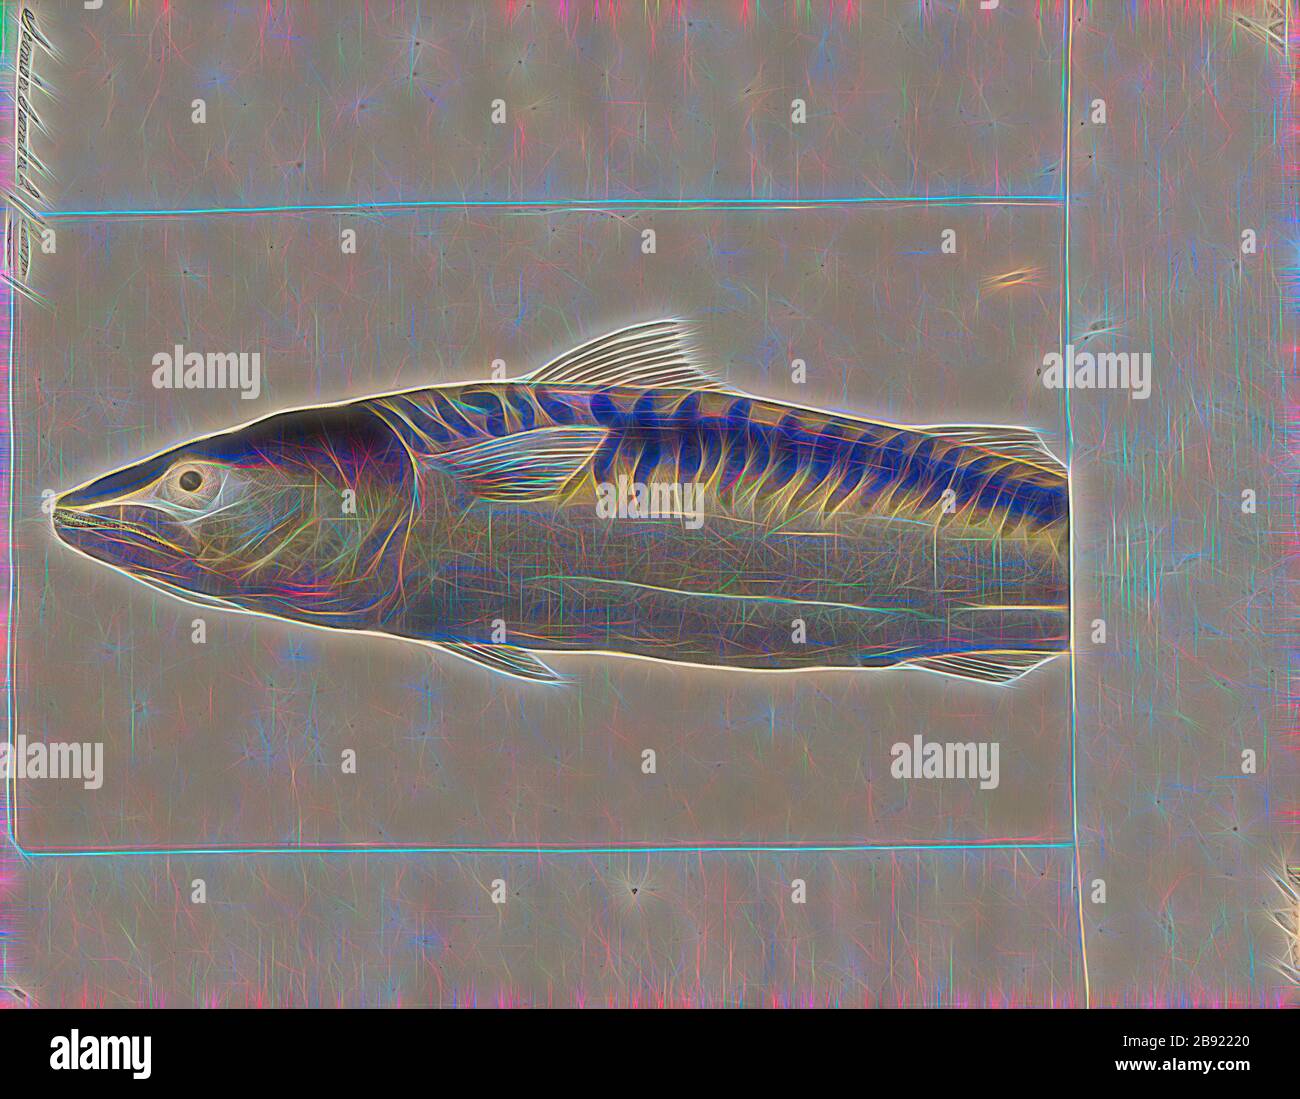 Scomber scomber, Print, Scomber è un genere di pesci della famiglia Scombridae che vive nell'oceano aperto che si trova nell'Oceano Atlantico, Indiano e Pacifico. Il genere Scomber e il genere Rastrelliger comprendono la tribù Scombrini, conosciuta come i veri sgombri. Questi pesci hanno un corpo allungato, molto affusolato, muscoloso e agile. Gli occhi sono grandi, la testa è allungata, con una grande bocca dotata di denti. Hanno due pinne dorsali triangolari, con alcune pinne stabilizzatrici lungo il peduncolo caudale. Il colore di base è blu-verde con un ventre bianco argenteo e una parte posteriore più scura, di solito chiazzato nero., 1 Foto Stock